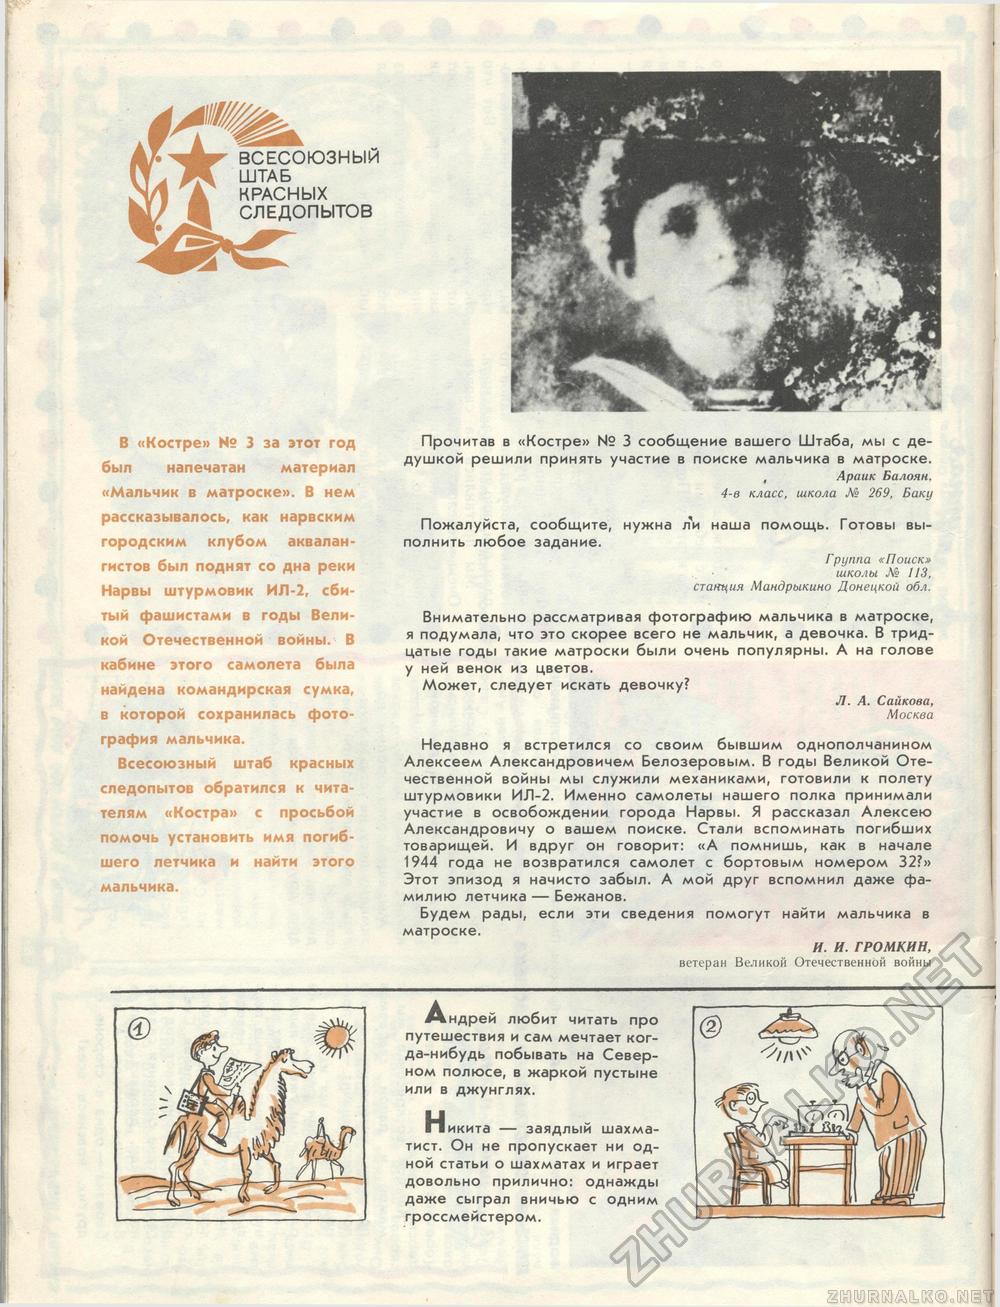  1986-12,  15